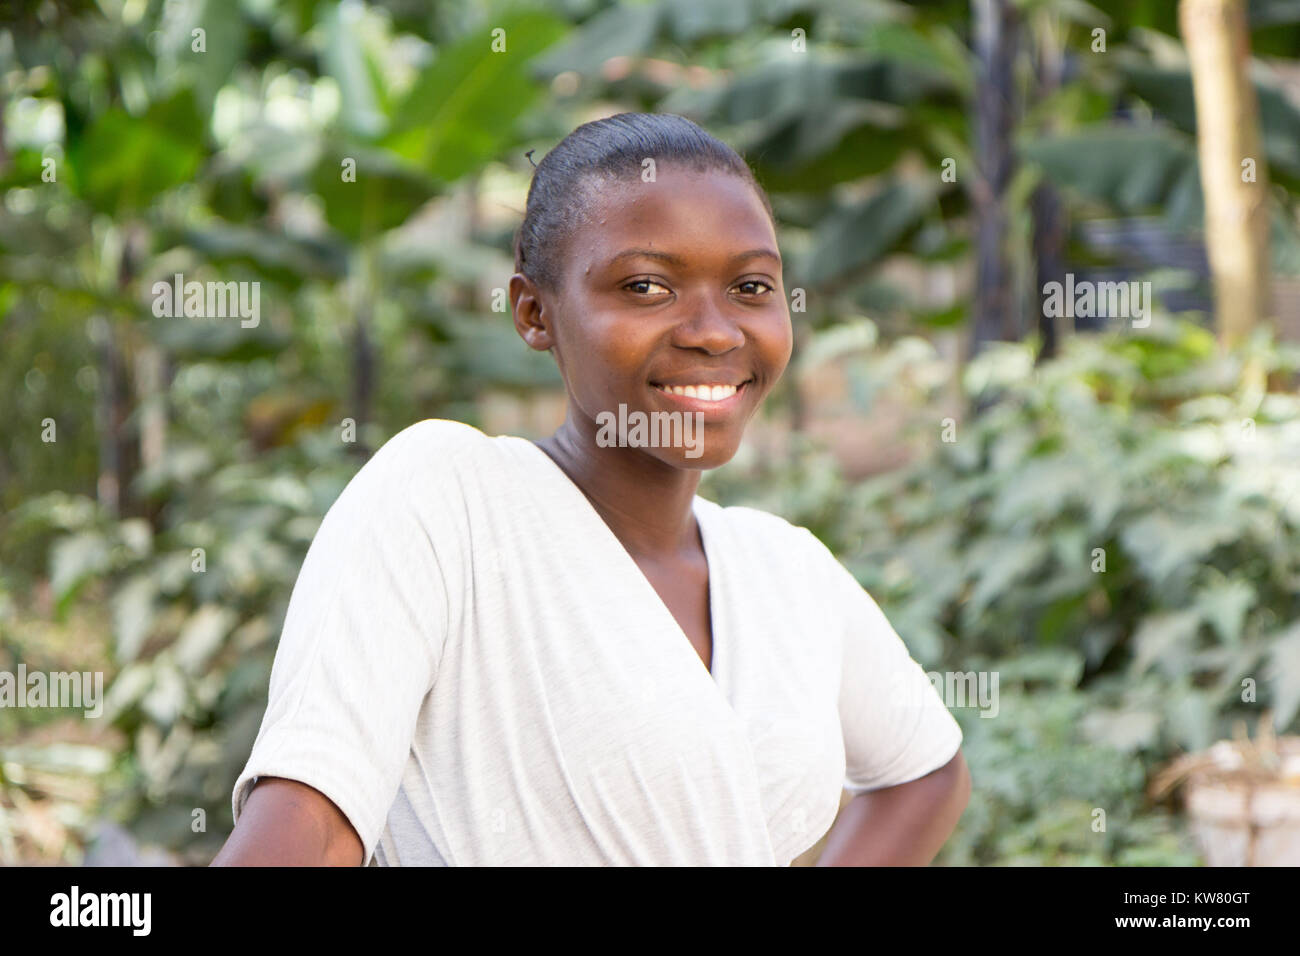 A beautiful smiling young Ugandan woman Stock Photo